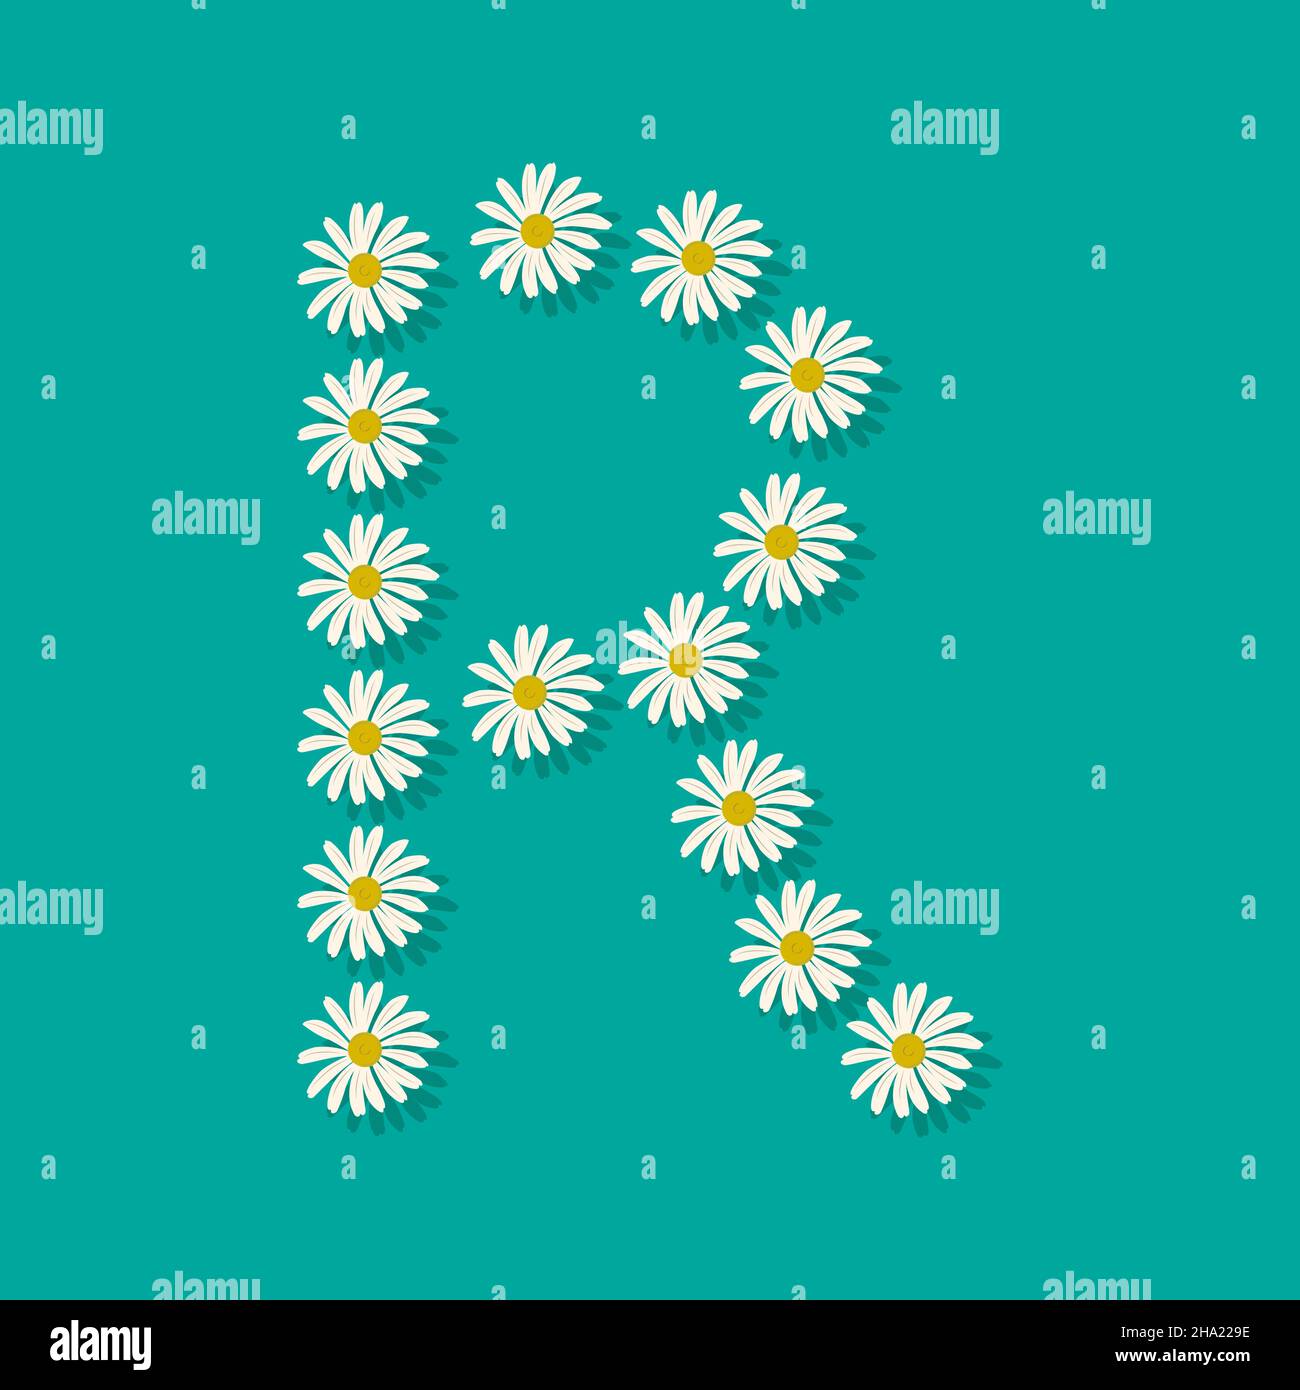 Lettre R de fleurs de camomille blanches.Police ou décoration festive pour les vacances de printemps ou d'été et le design.Illustration vectorielle plate Illustration de Vecteur